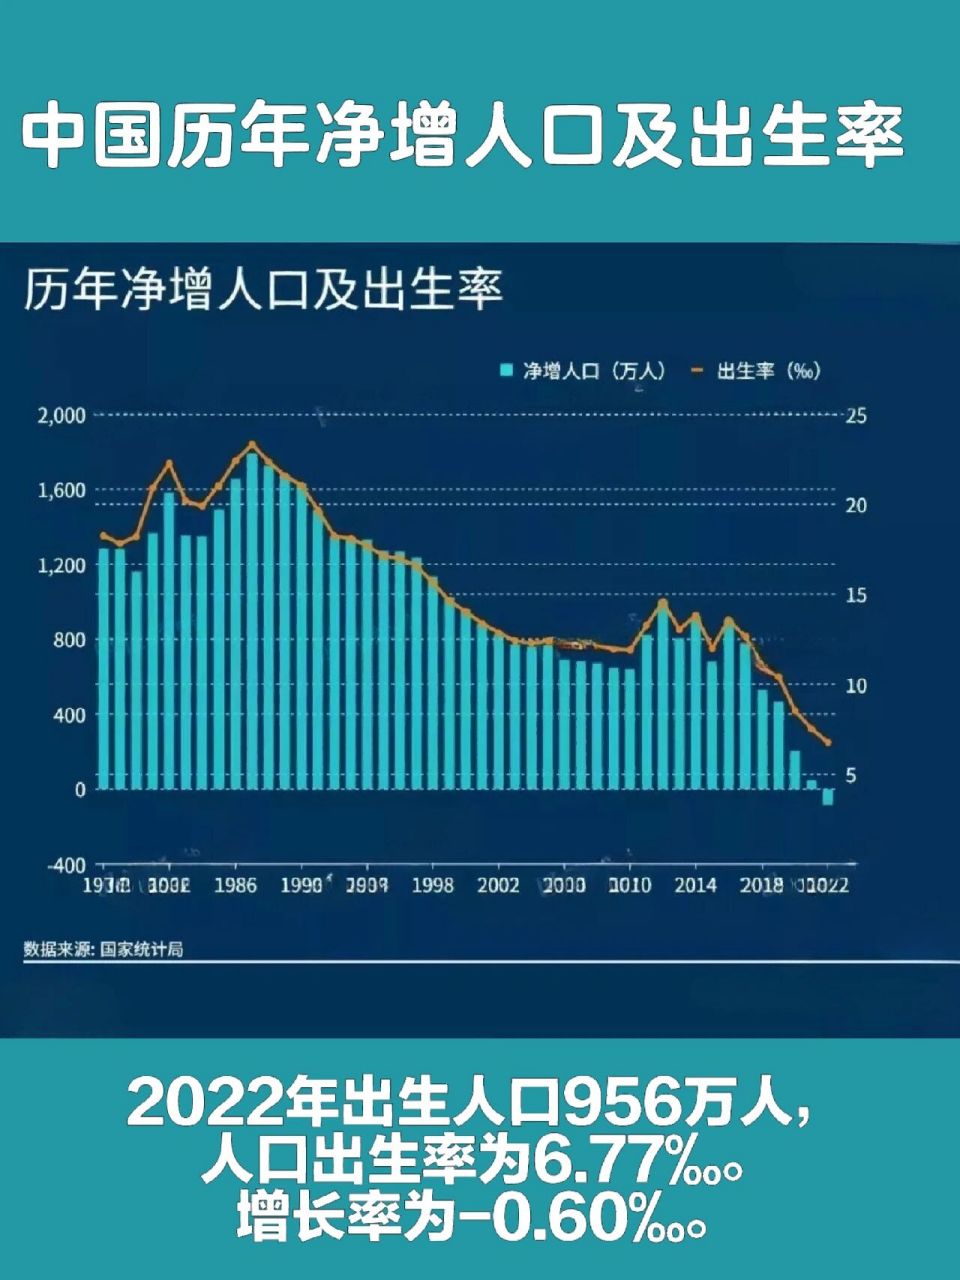 中国近十年出生率曲线图片